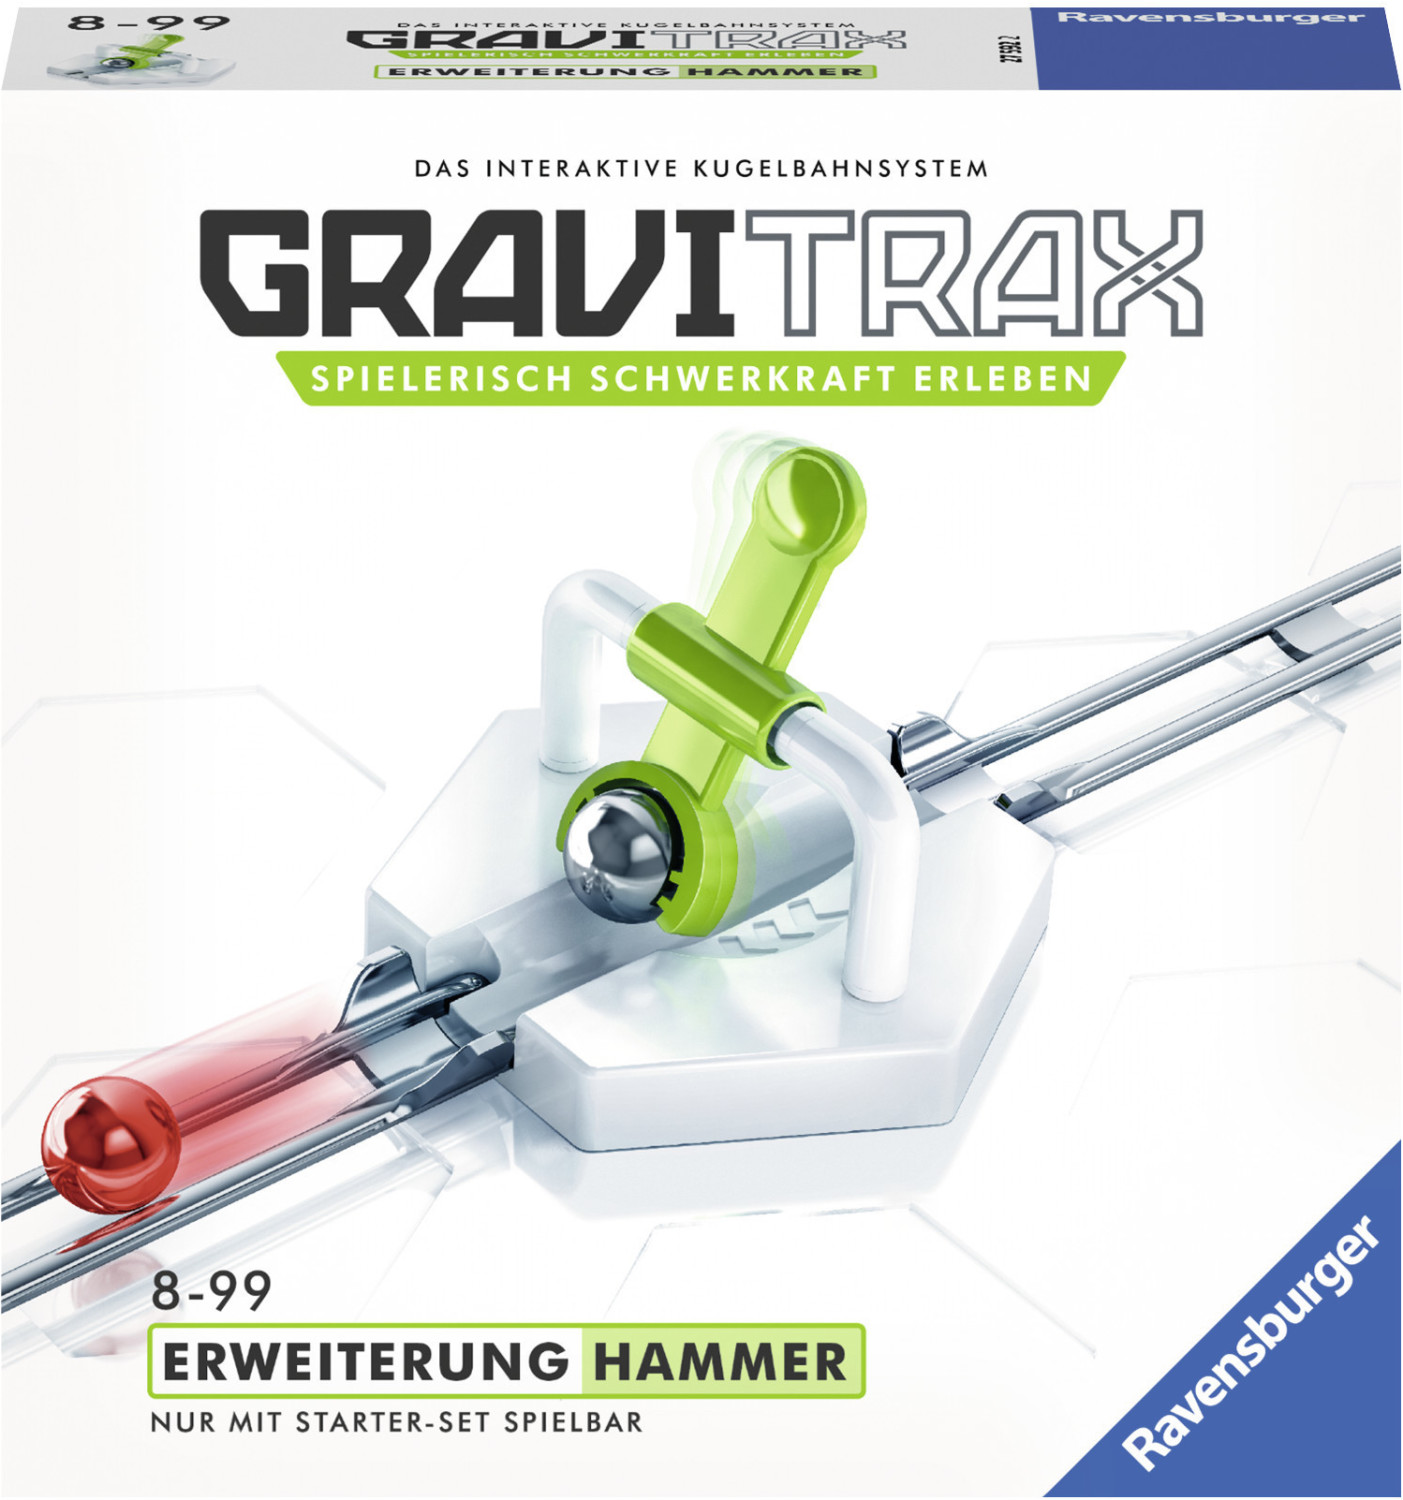 GraviTrax Bloc d'action Looping - Jeu de construction STEM - Circuit de  billes créatif - Ravensburger- des 8 ans